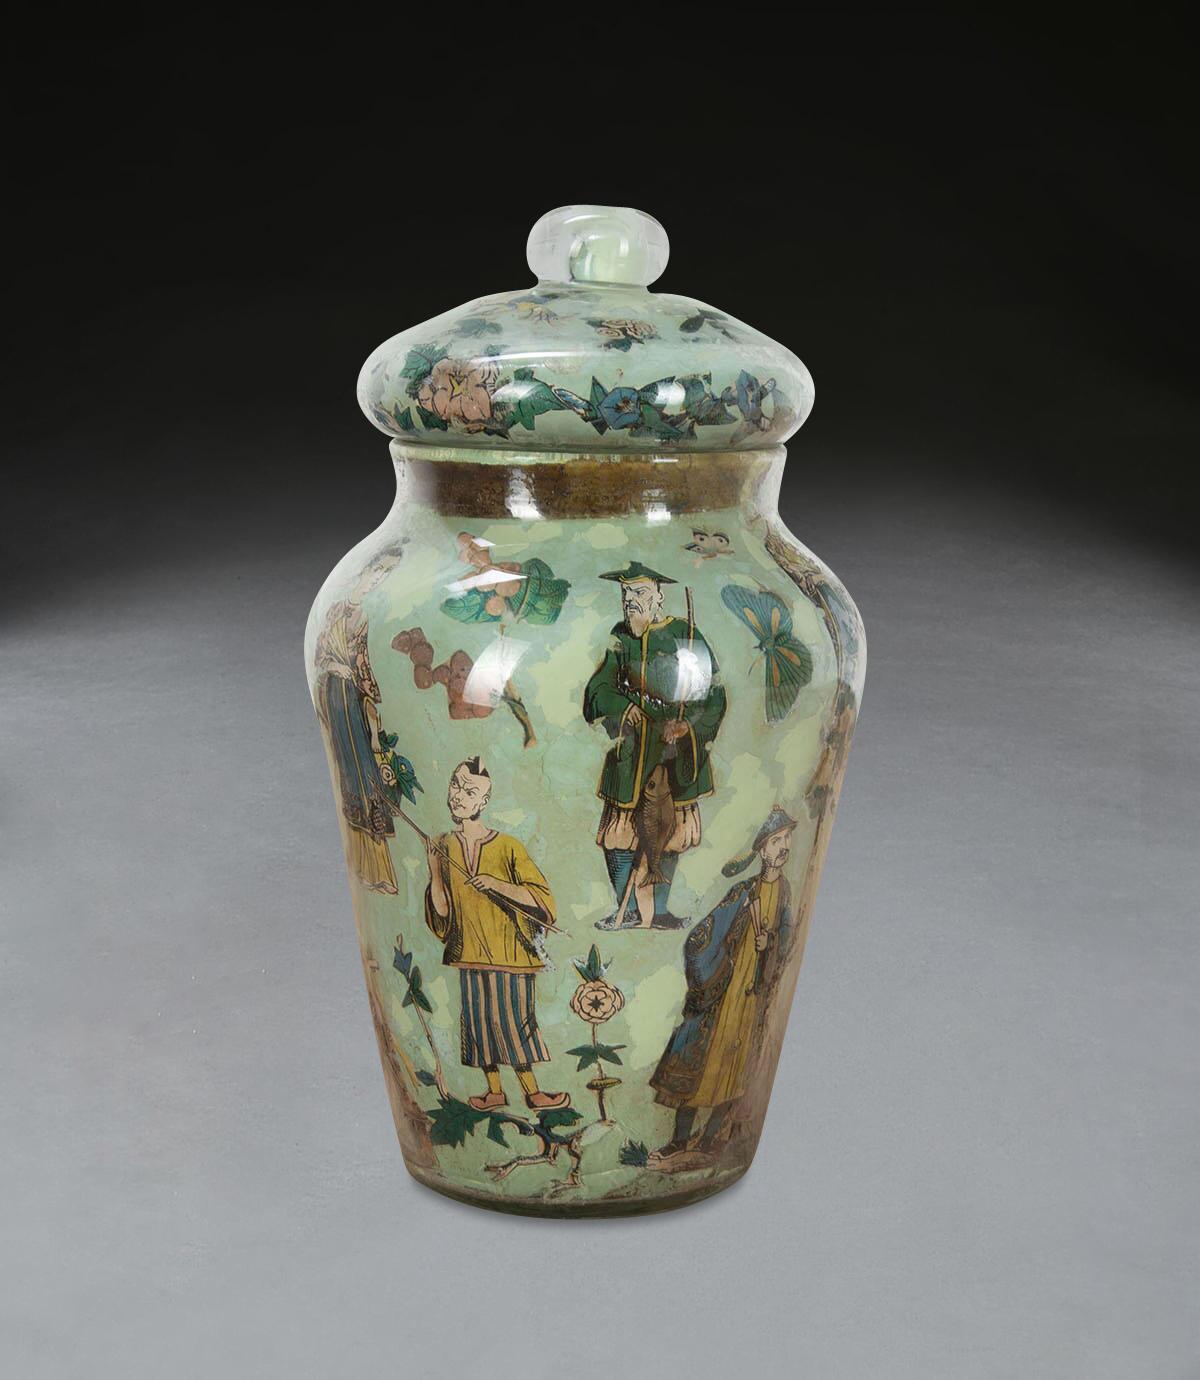 Un bon vase Decalcomania de la Régence avec couvercle, dans son décor chinoiserie d'origine de figures et de feuillages sur fond vert vif, en bon état, sans éclats, fissures ou écaillage. Circa 1830.

H : 24 cm (9 7/16